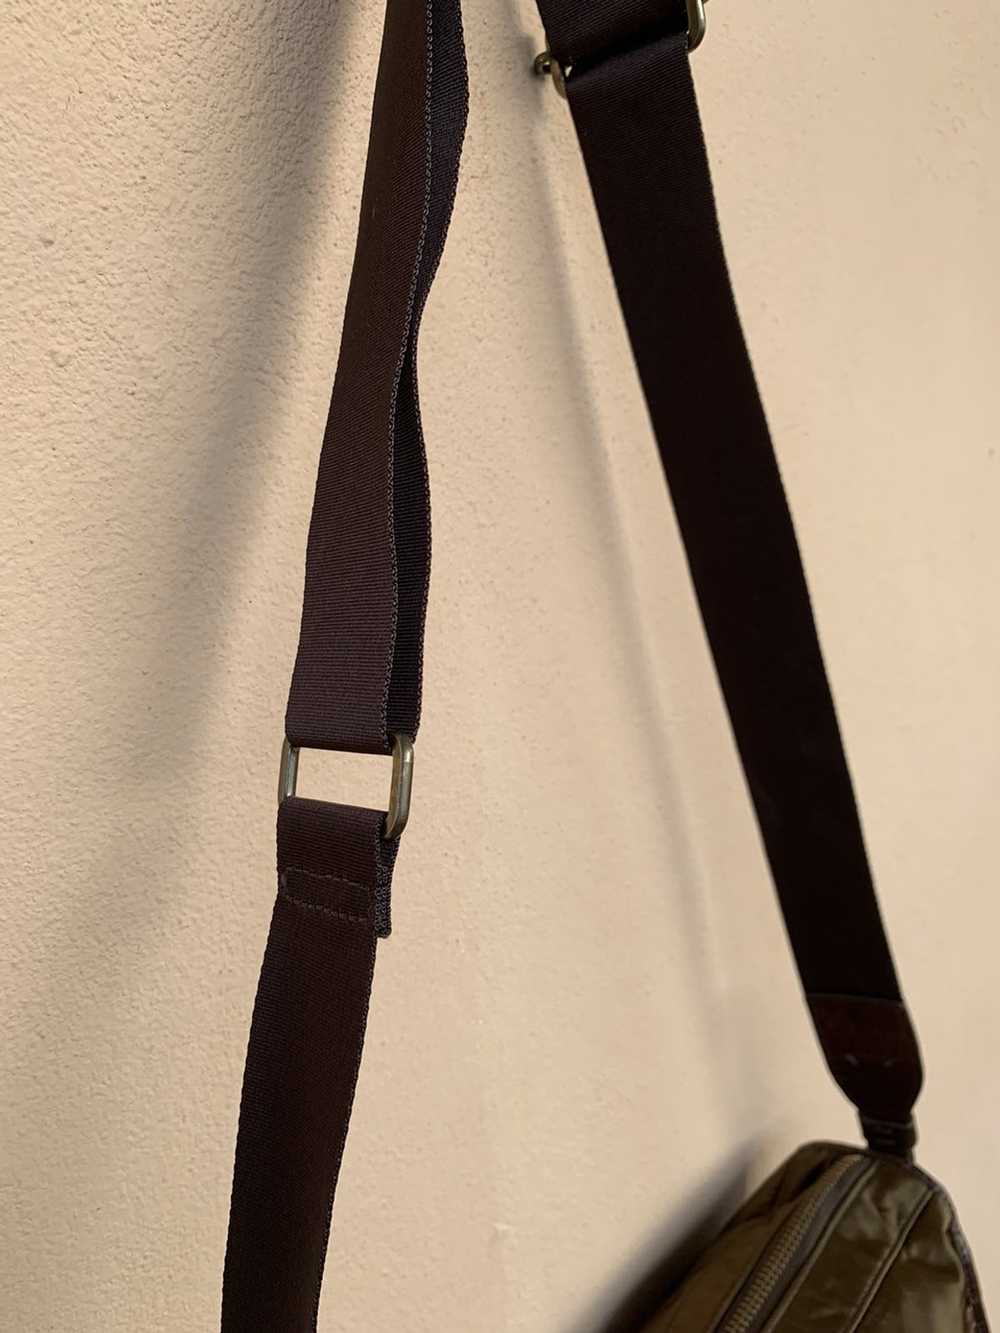 Agnes B. × Rare Agnes B sling bag nice design - image 6